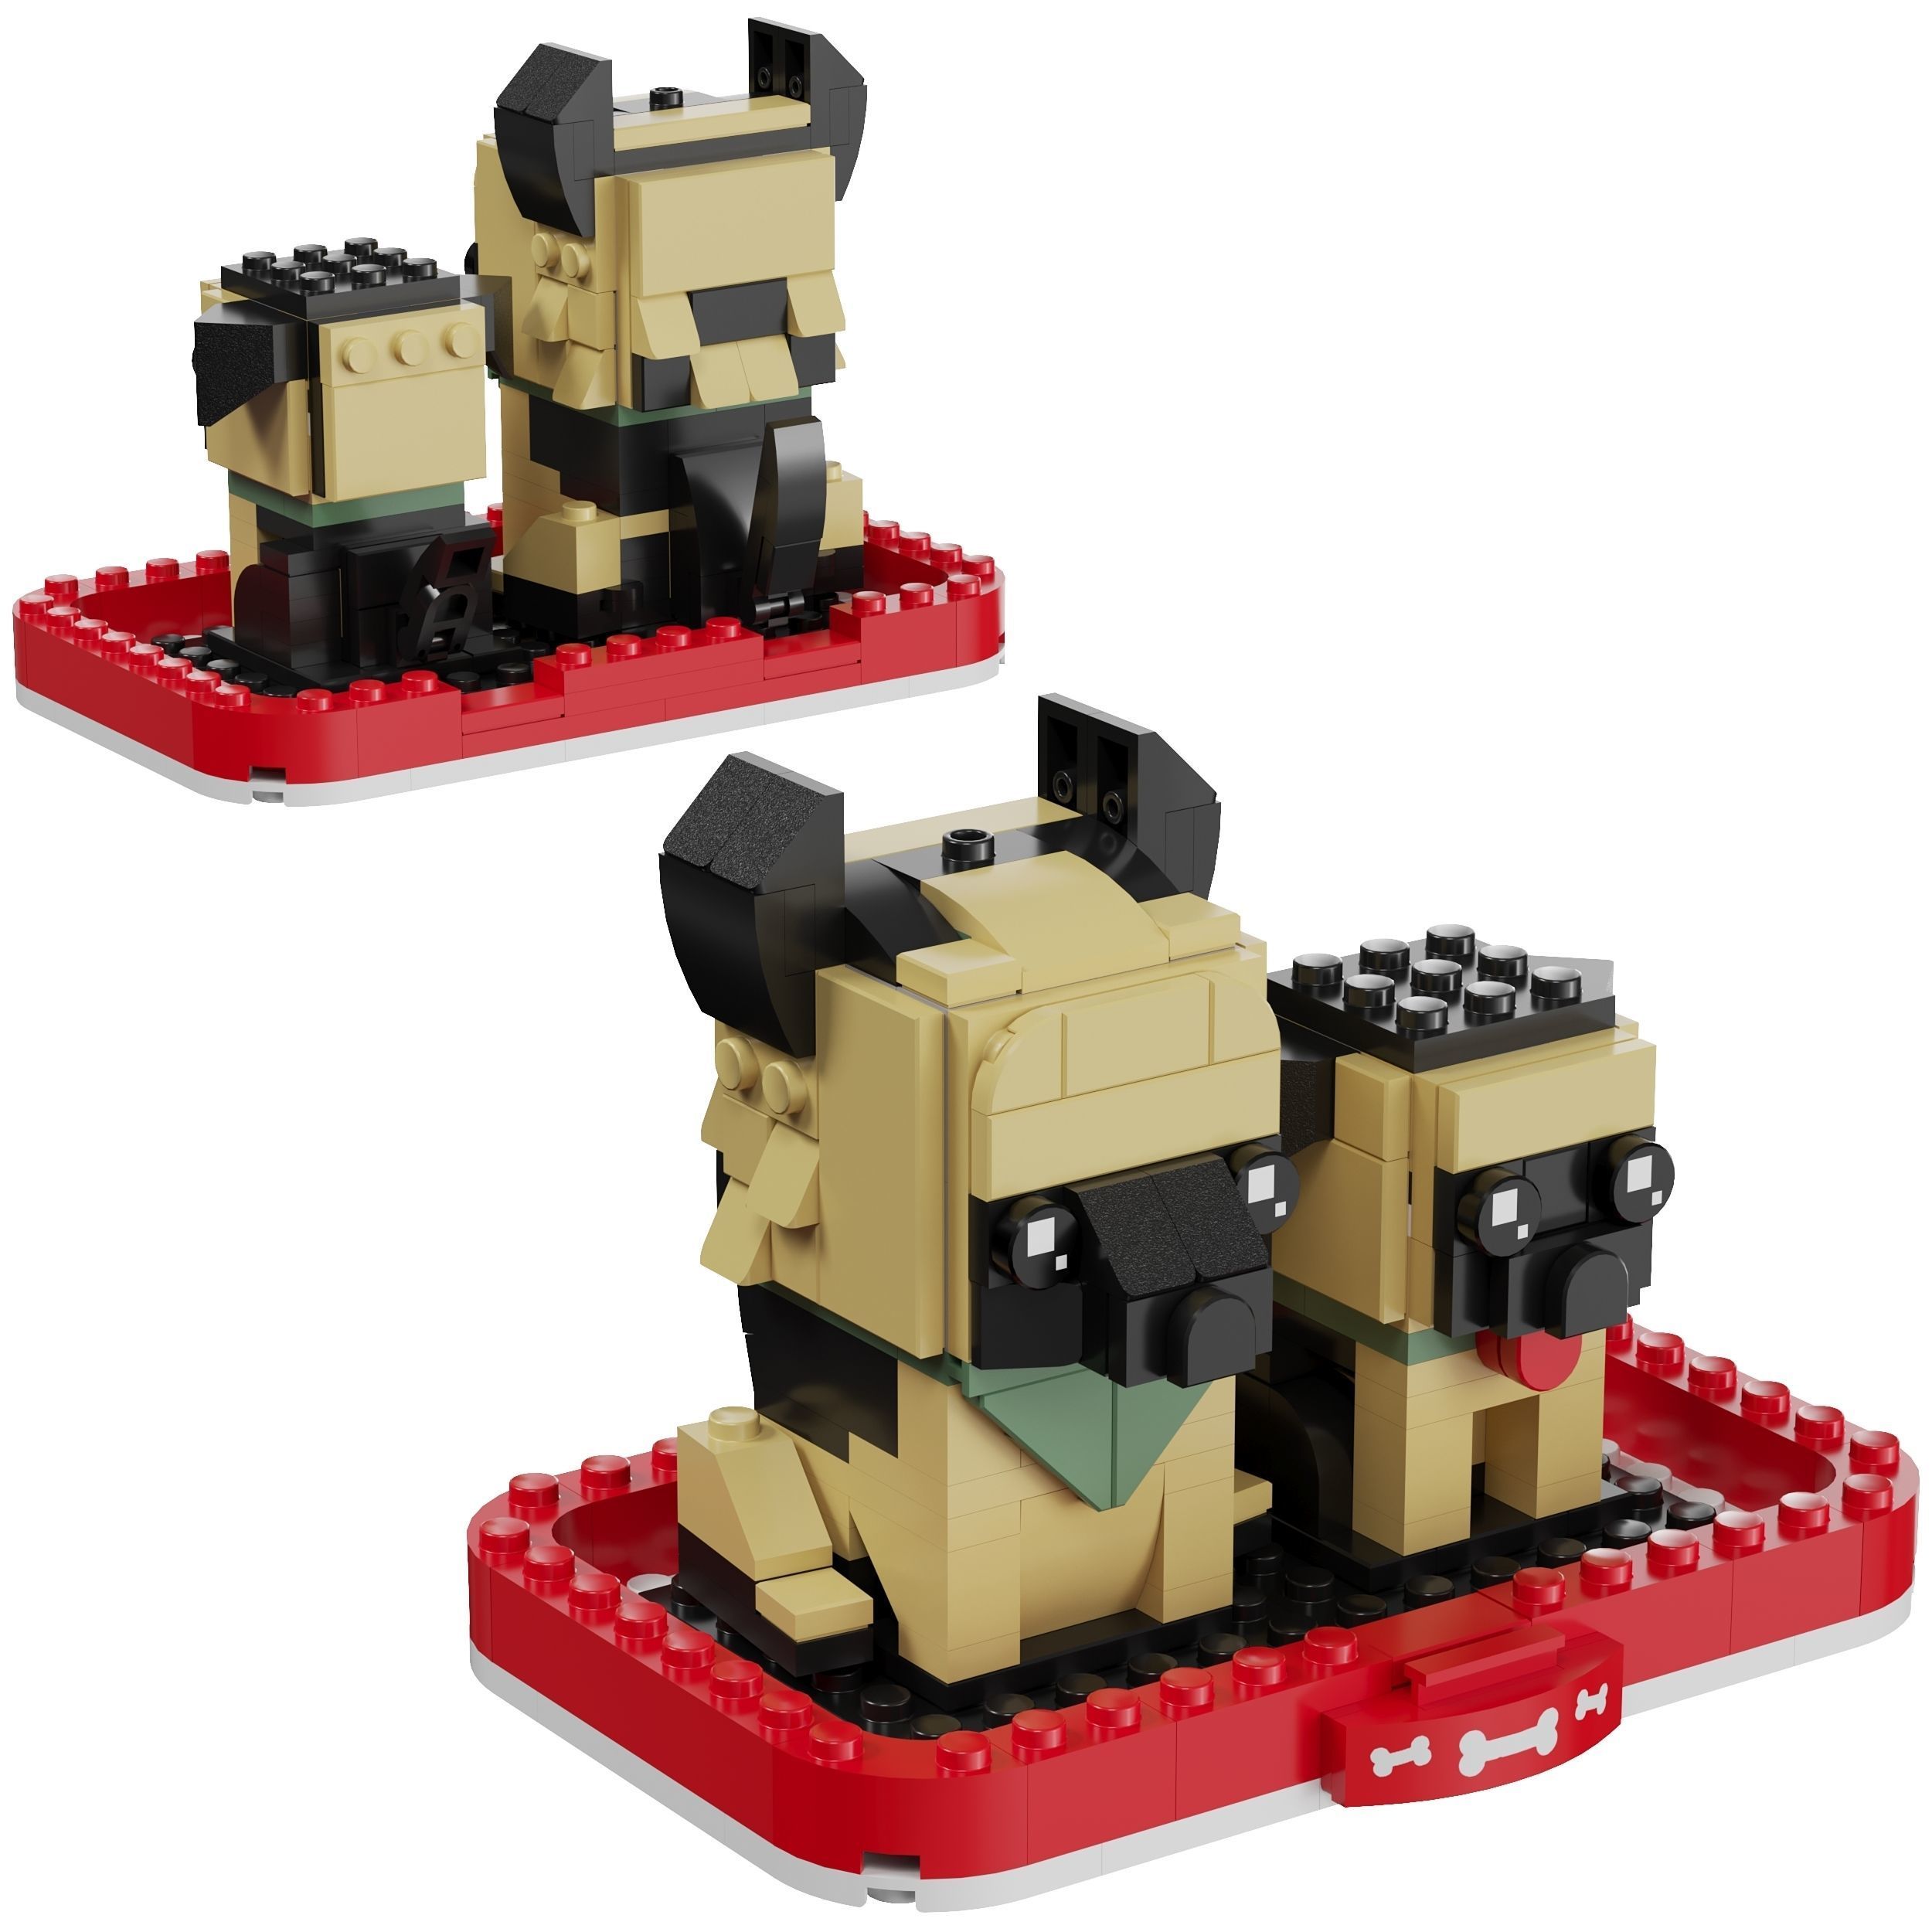 3D Lego BrickHeadz